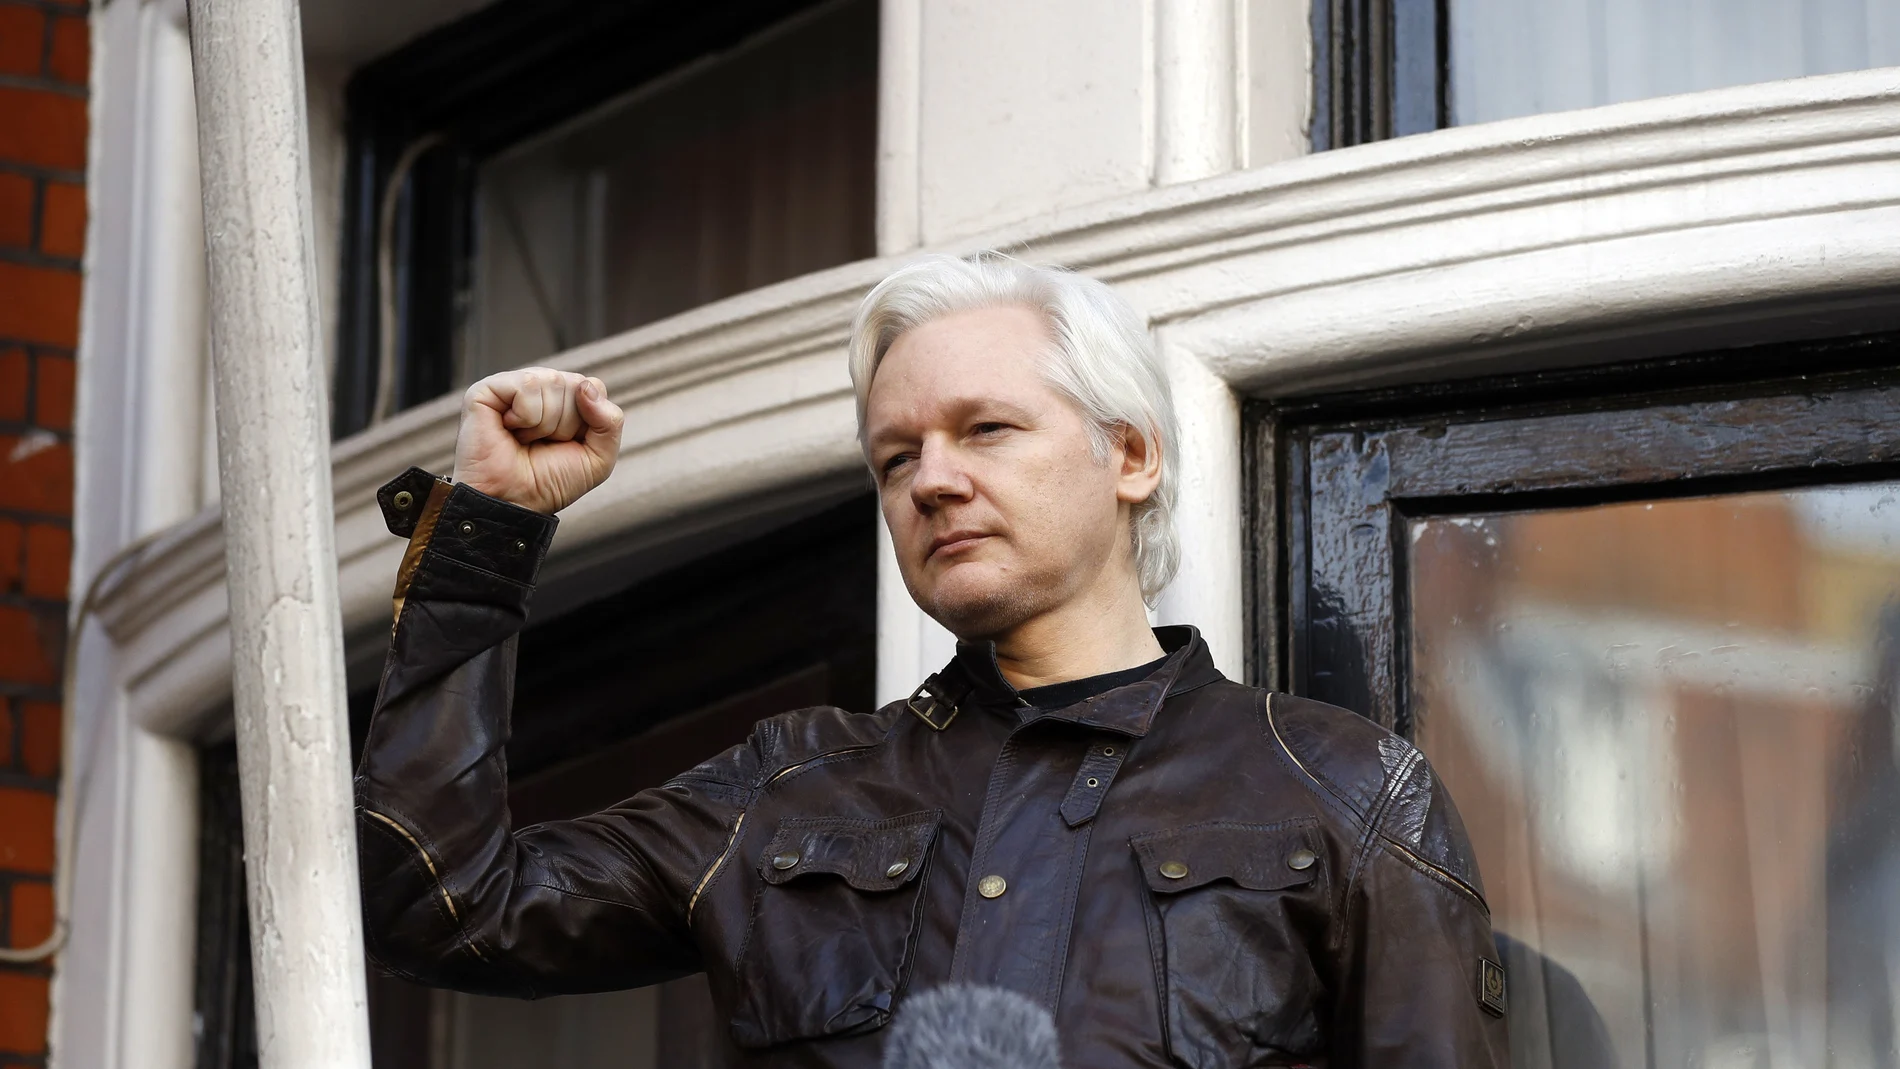 Imagen de archivo del fundador de Wikileaks, Julian Assange